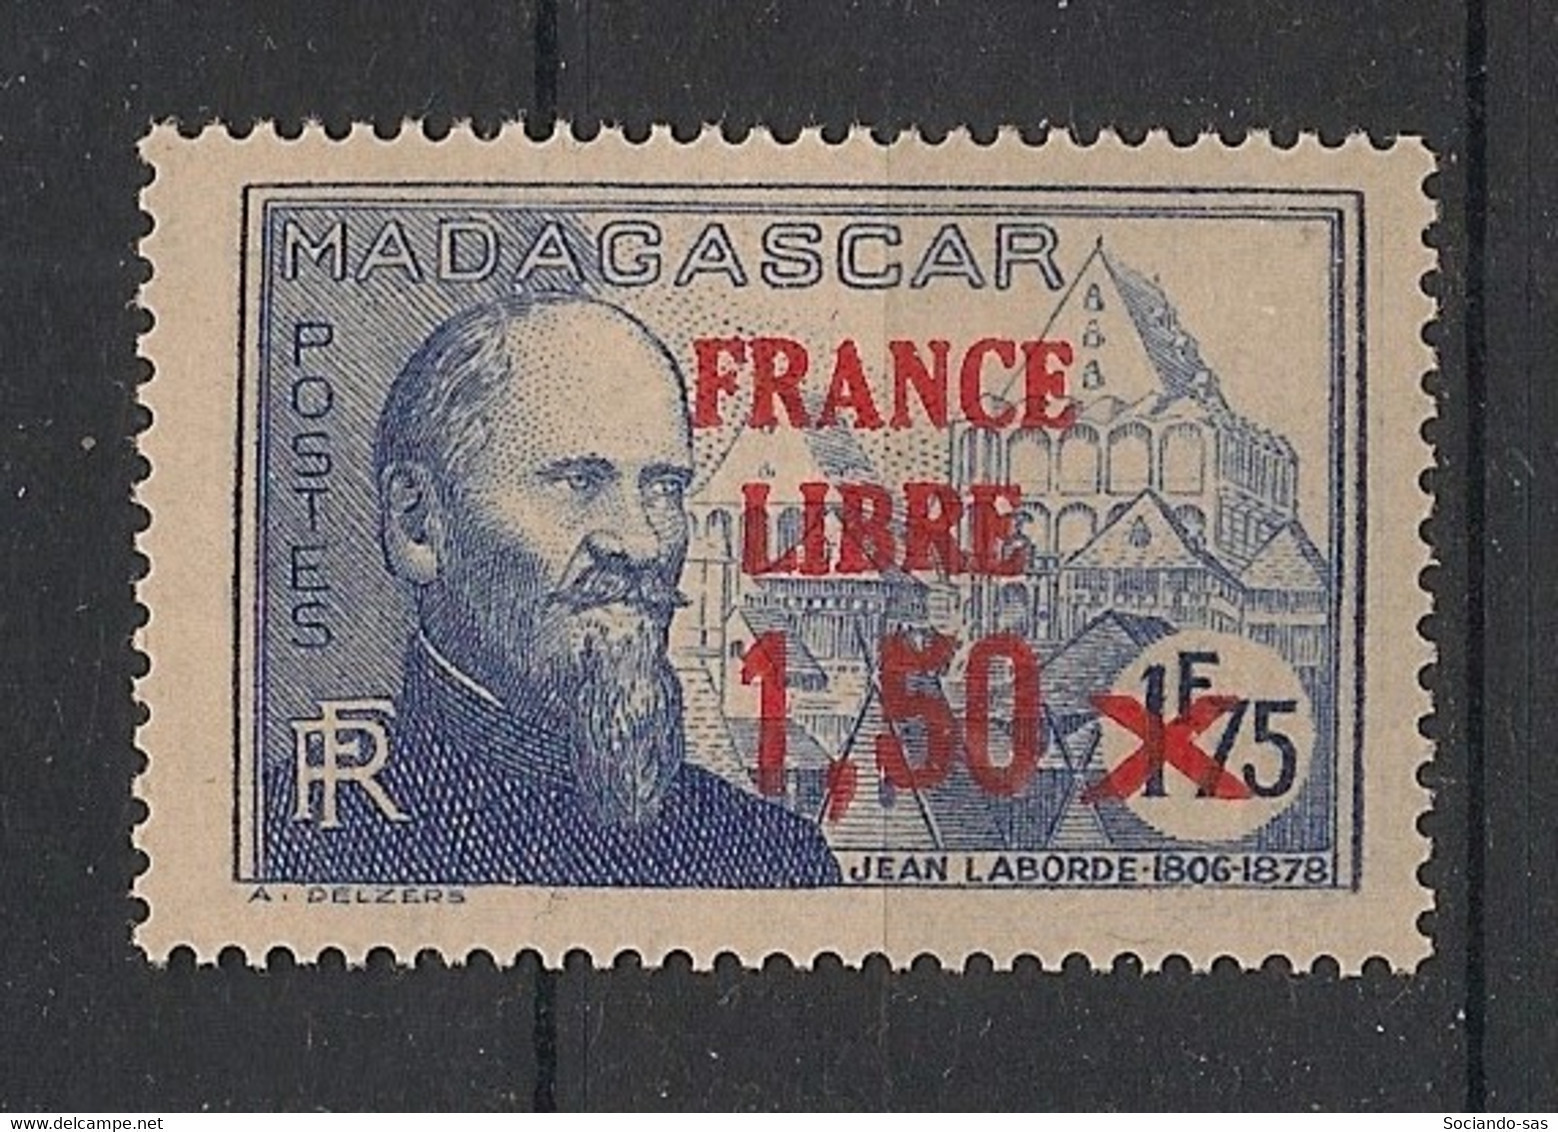 MADAGASCAR - 1942 - N°YT. 263 - France Libre 1f75 Sur 1f50 - Neuf Luxe ** / MNH / Postfrisch - Ungebraucht